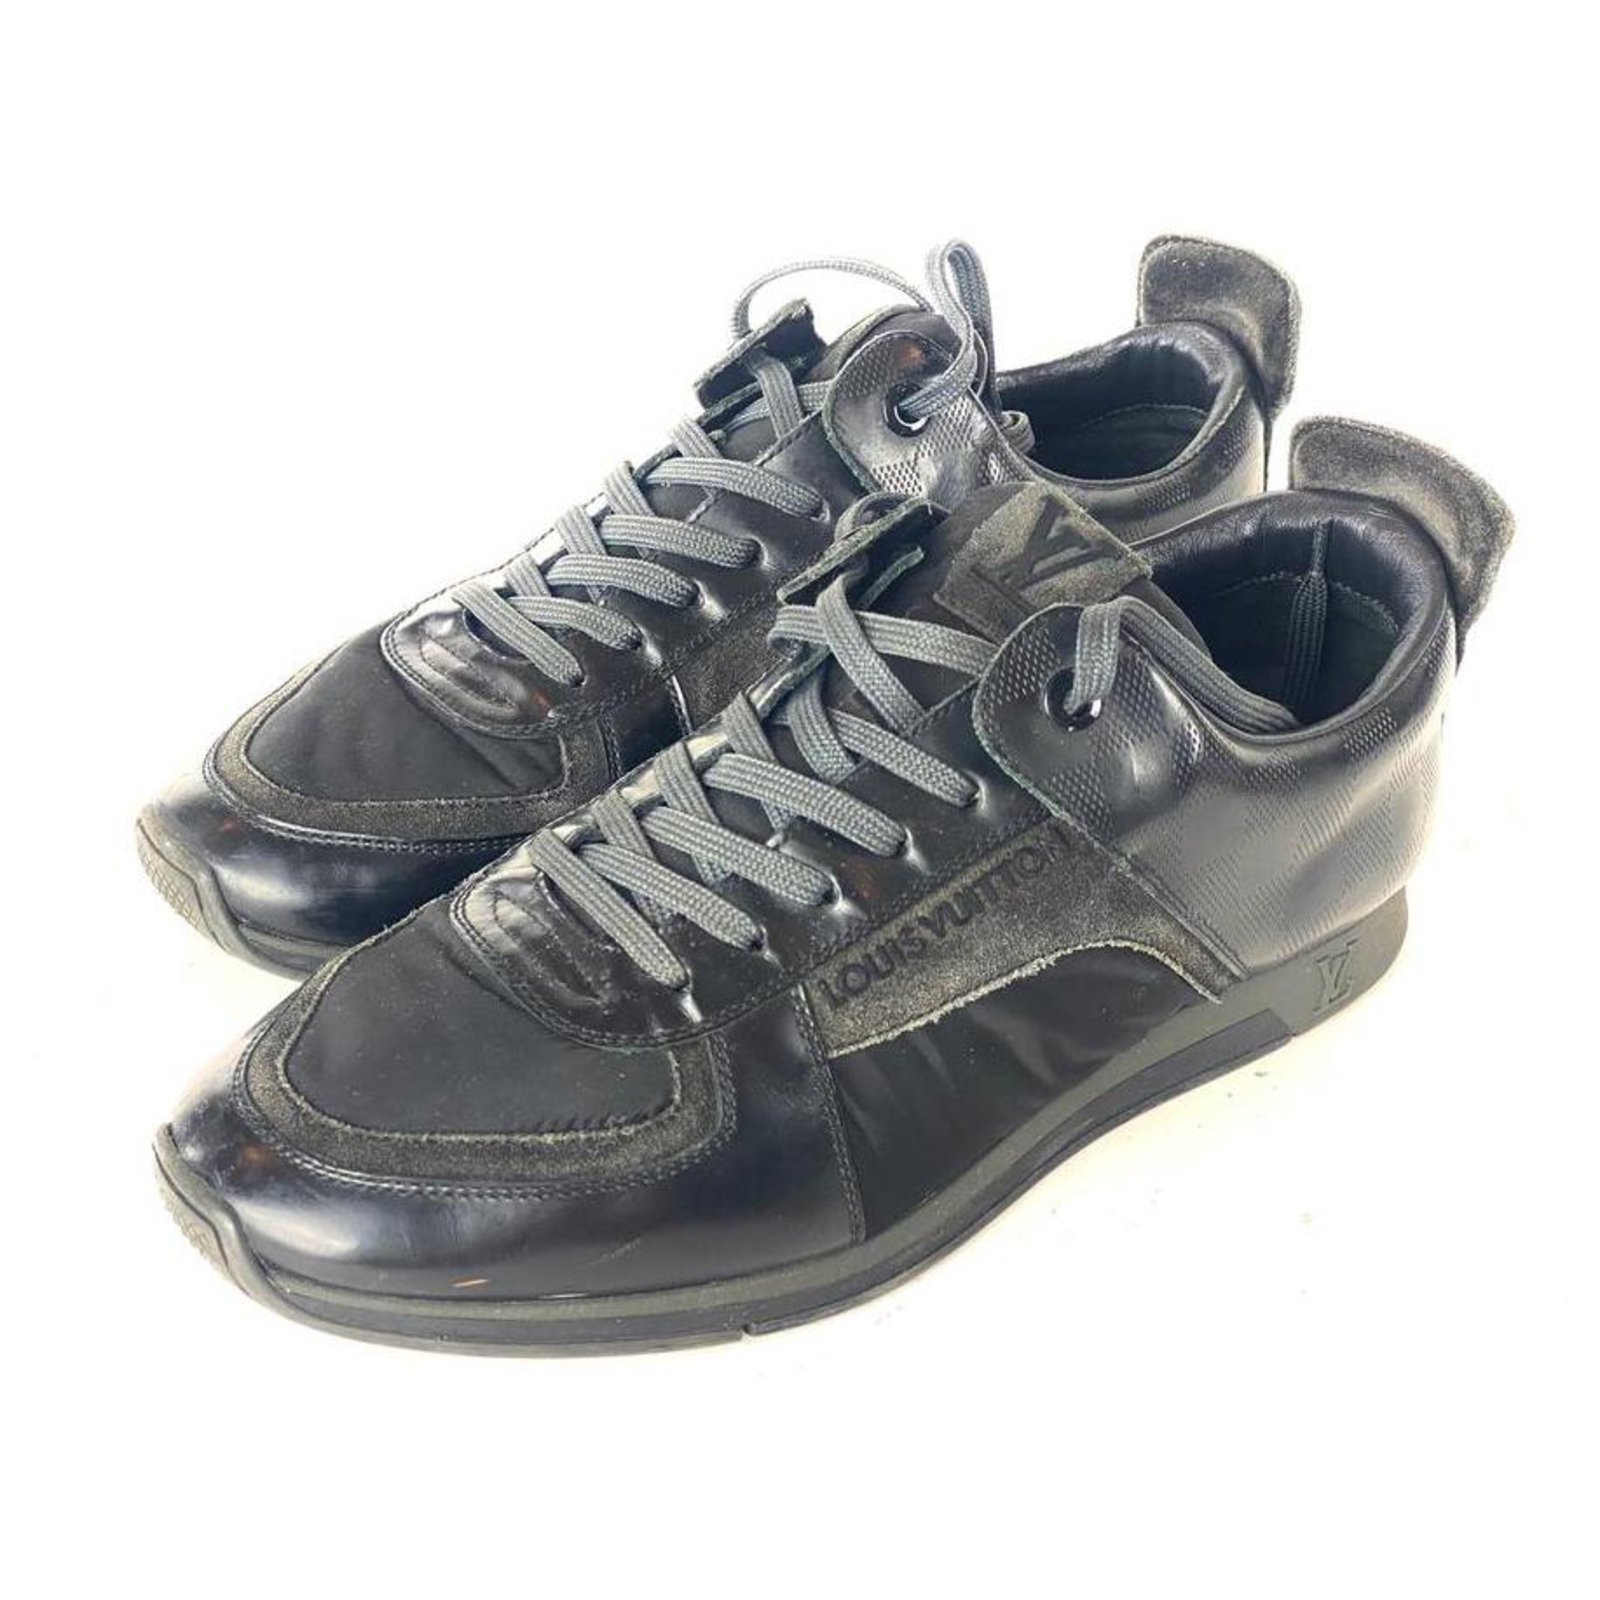 Louis Vuitton, Shoes, Louis Vuitton Slalom Sneakers